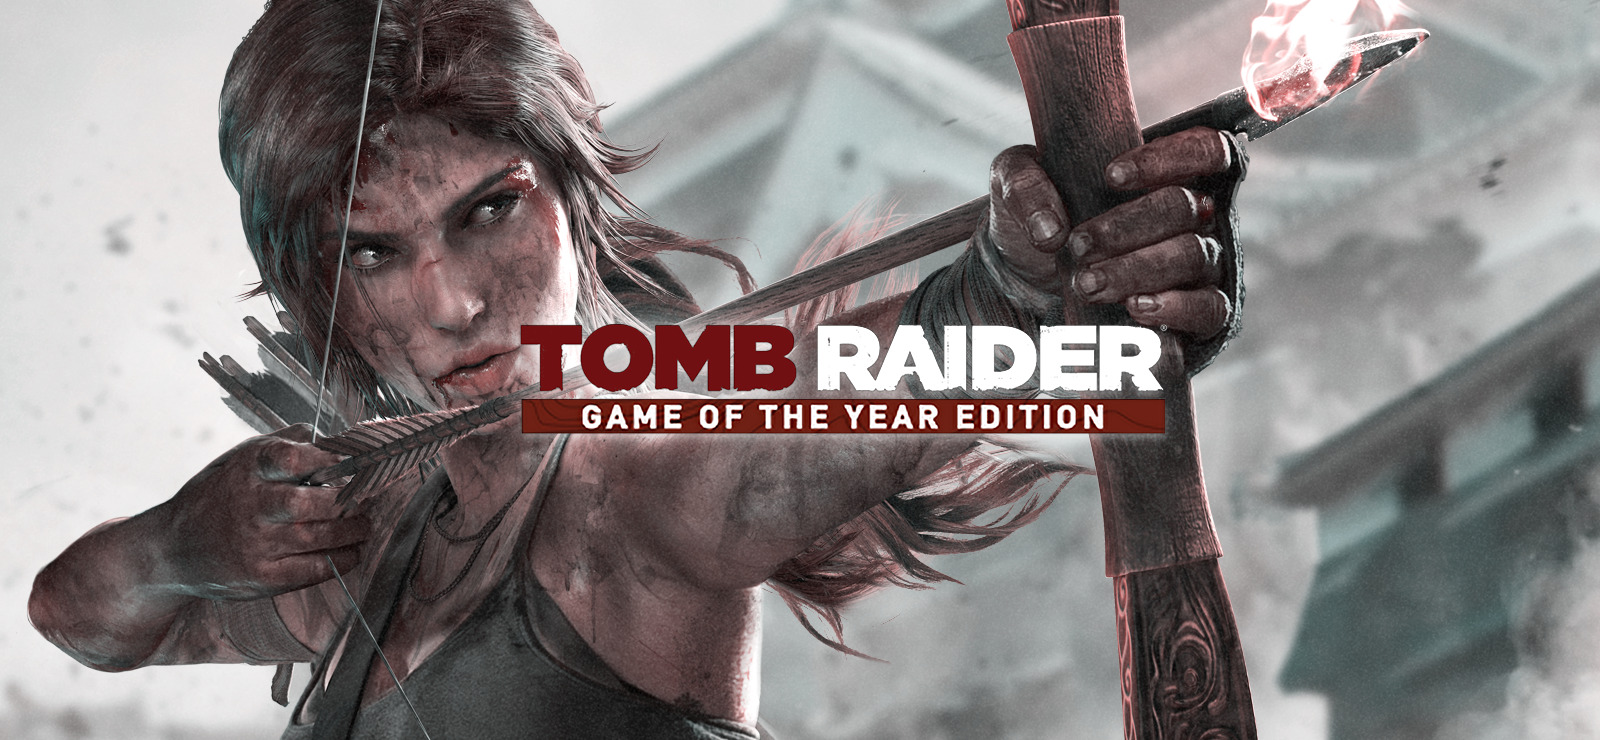 Tomb Raider GOTY on GOG.com